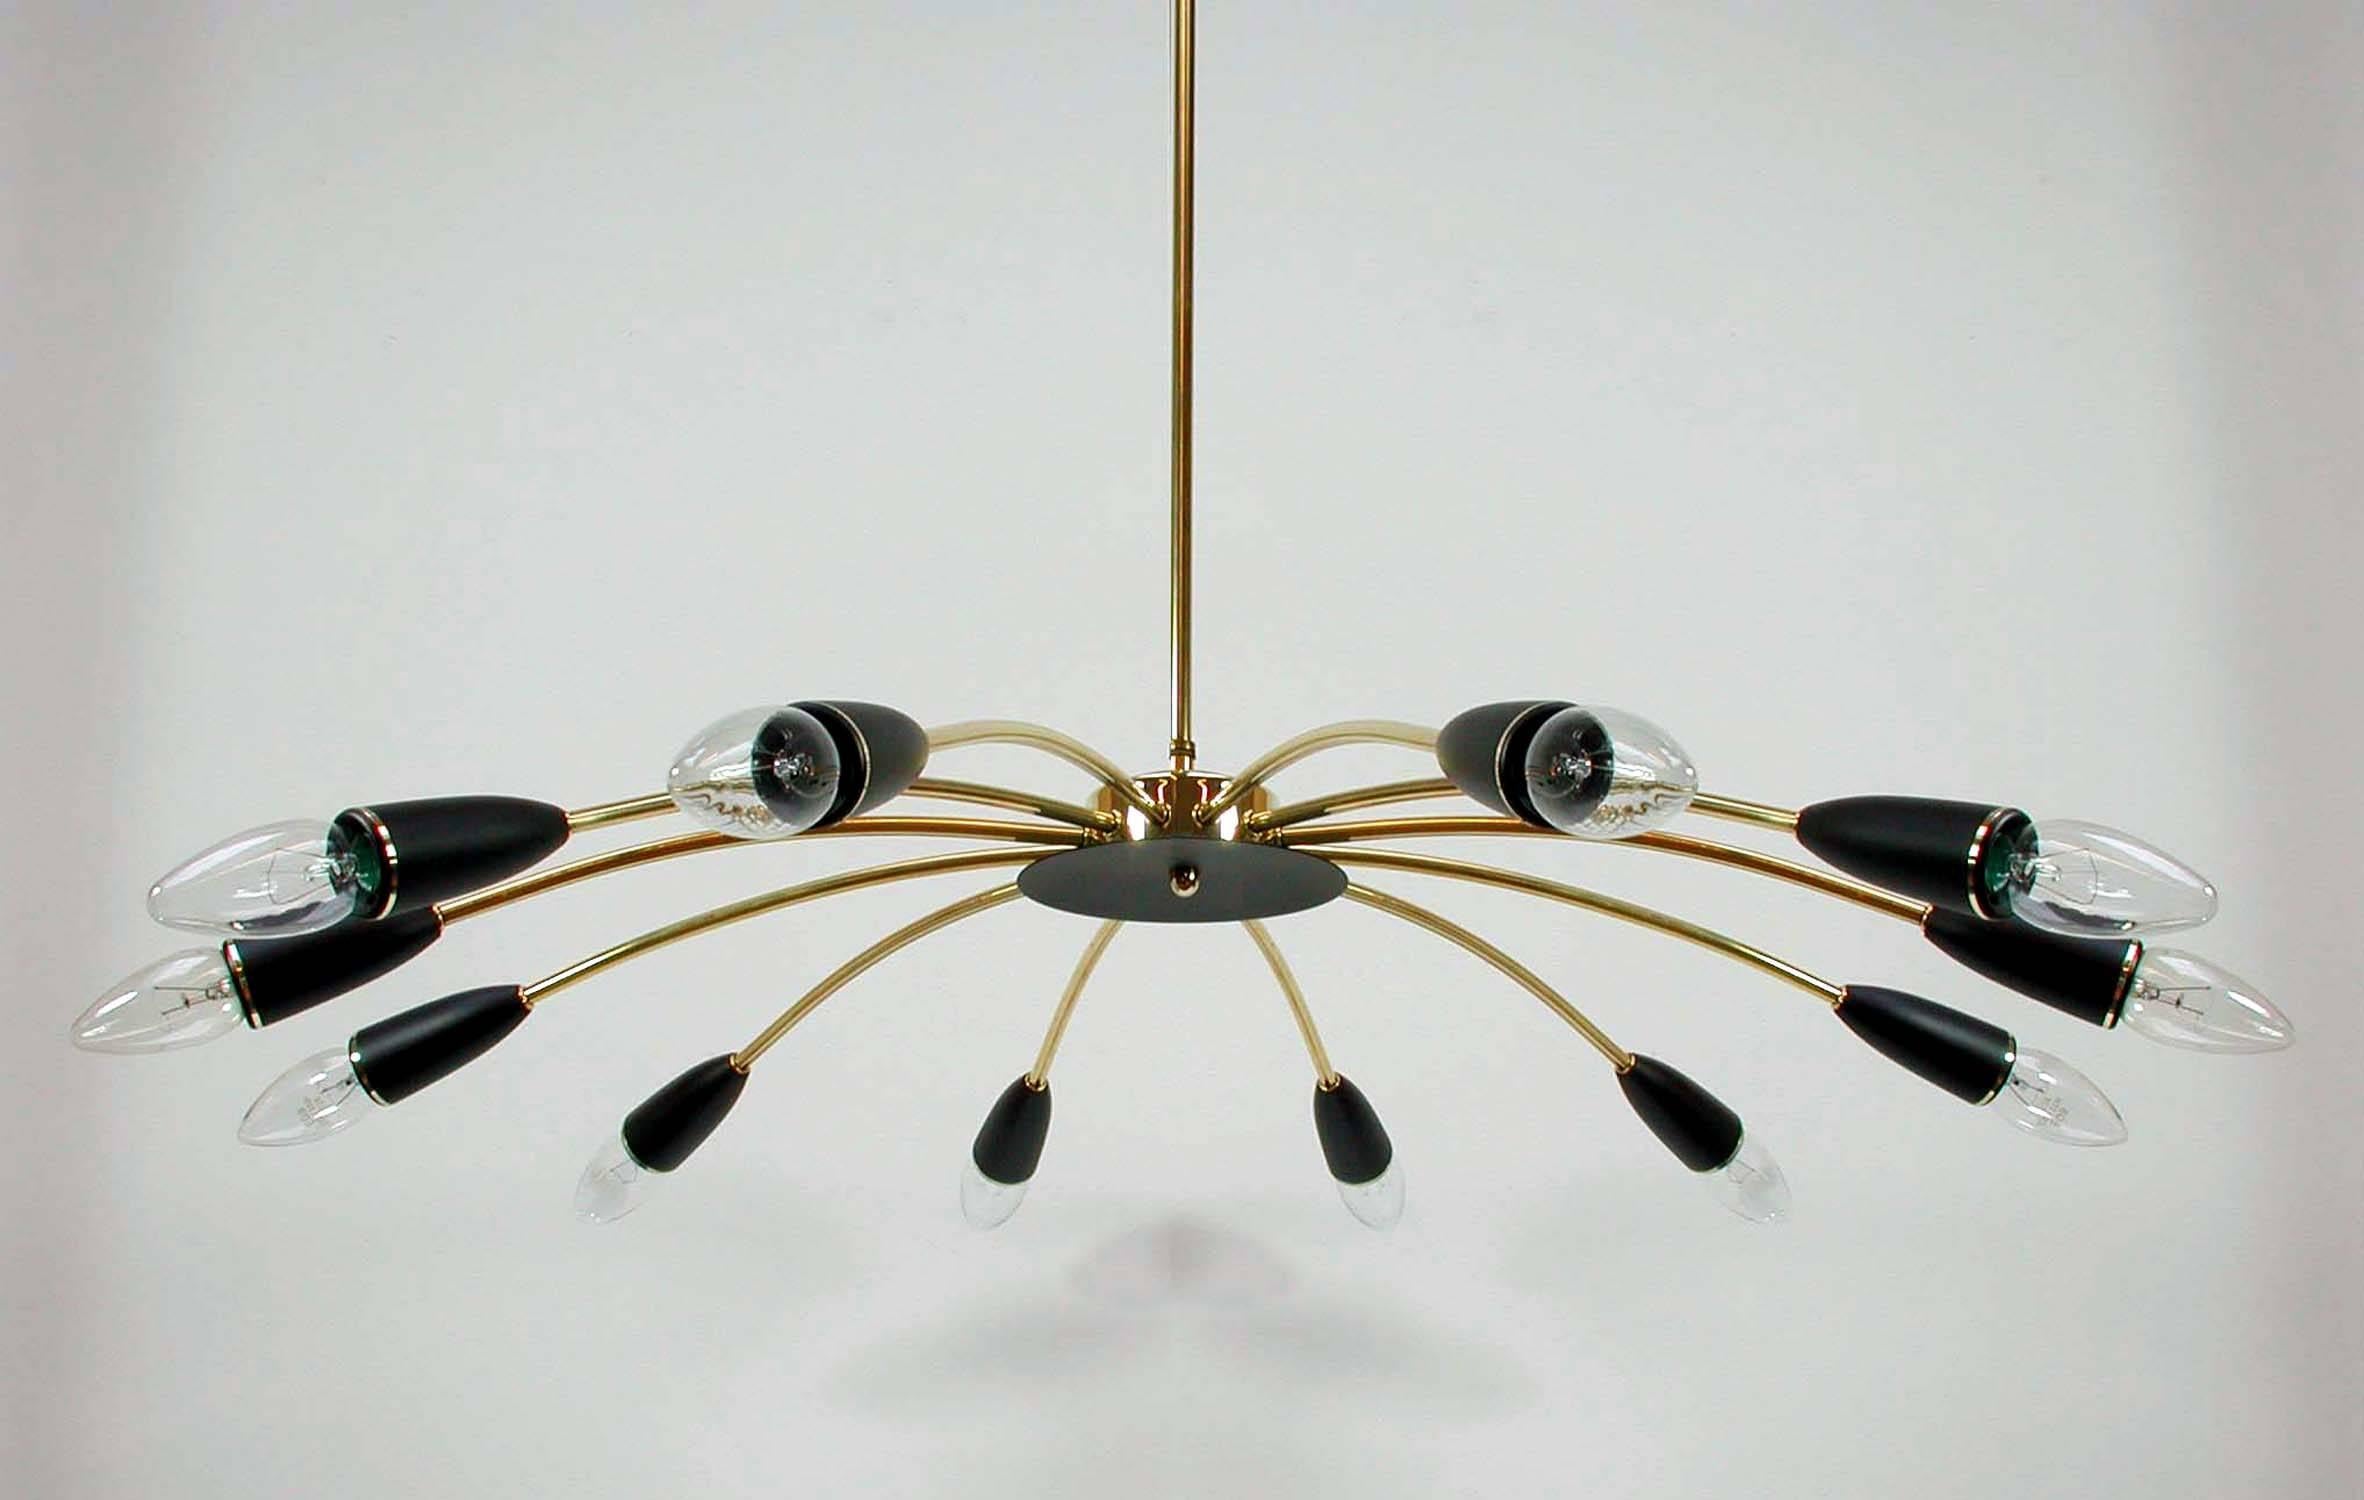 Cet élégant lustre de style Spoutnik a été fabriqué en Italie dans les années 1950. Il est fabriqué en laiton et comporte 12 supports d'ampoules en bakélite laquée noire.

La tige de la lampe en laiton peut être raccourcie ou retirée. Lorsqu'il